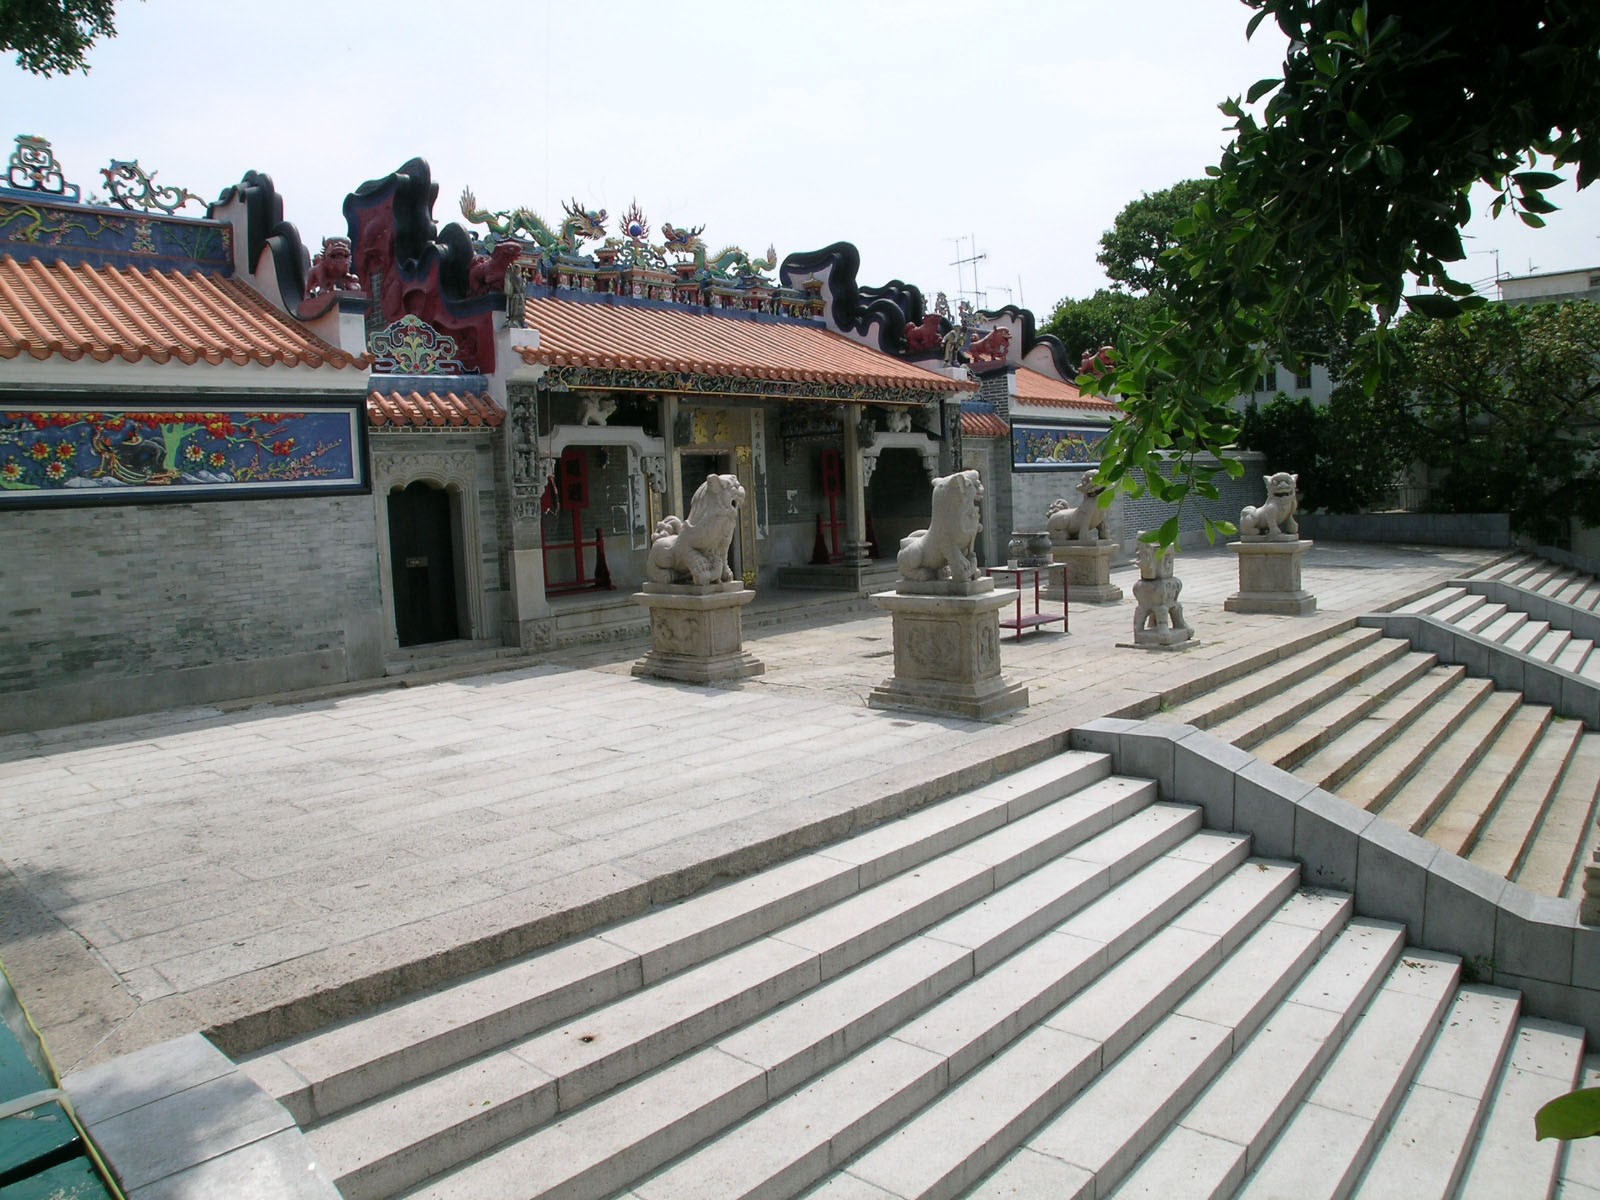 Photo 3: Yuk Hui Temple / Pak Tai Temple (Cheung Chau)